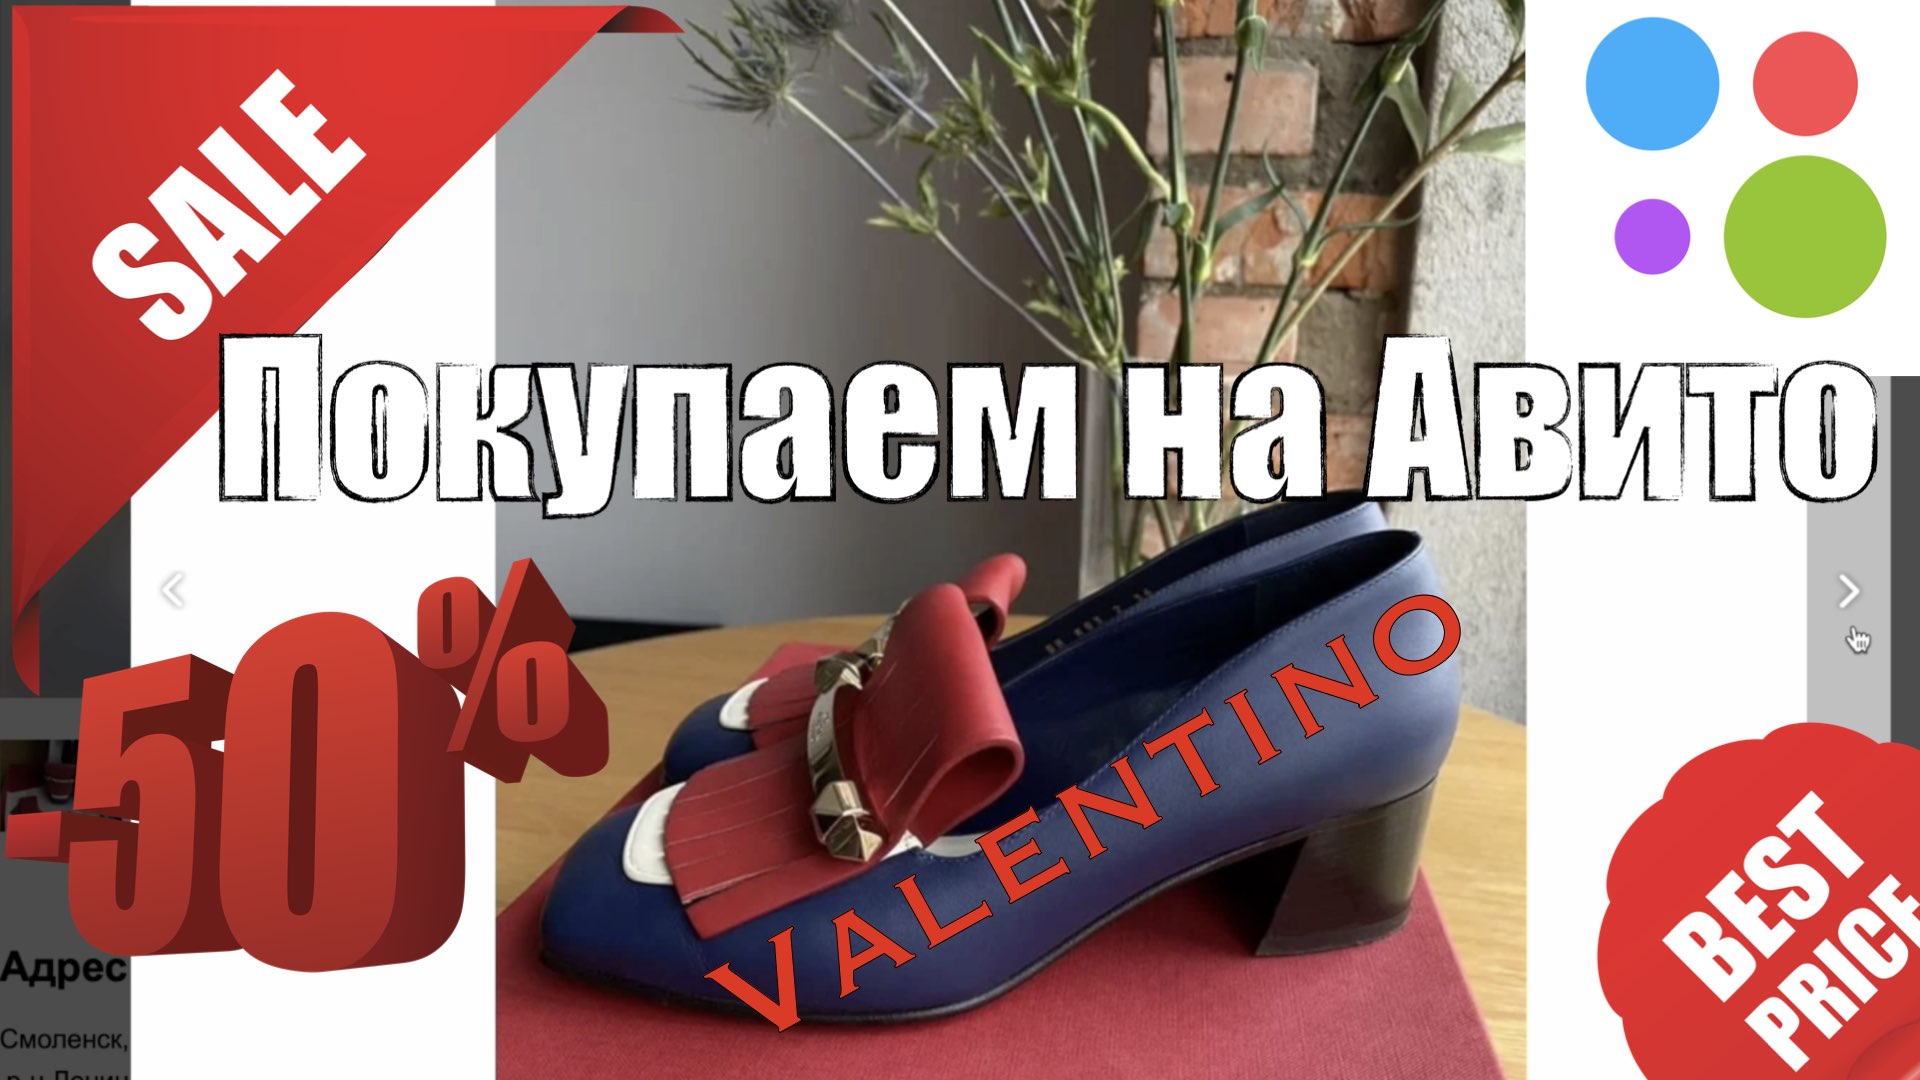 Покупаем туфли Valentino на Авито. Разбираемся как отличить подделку.